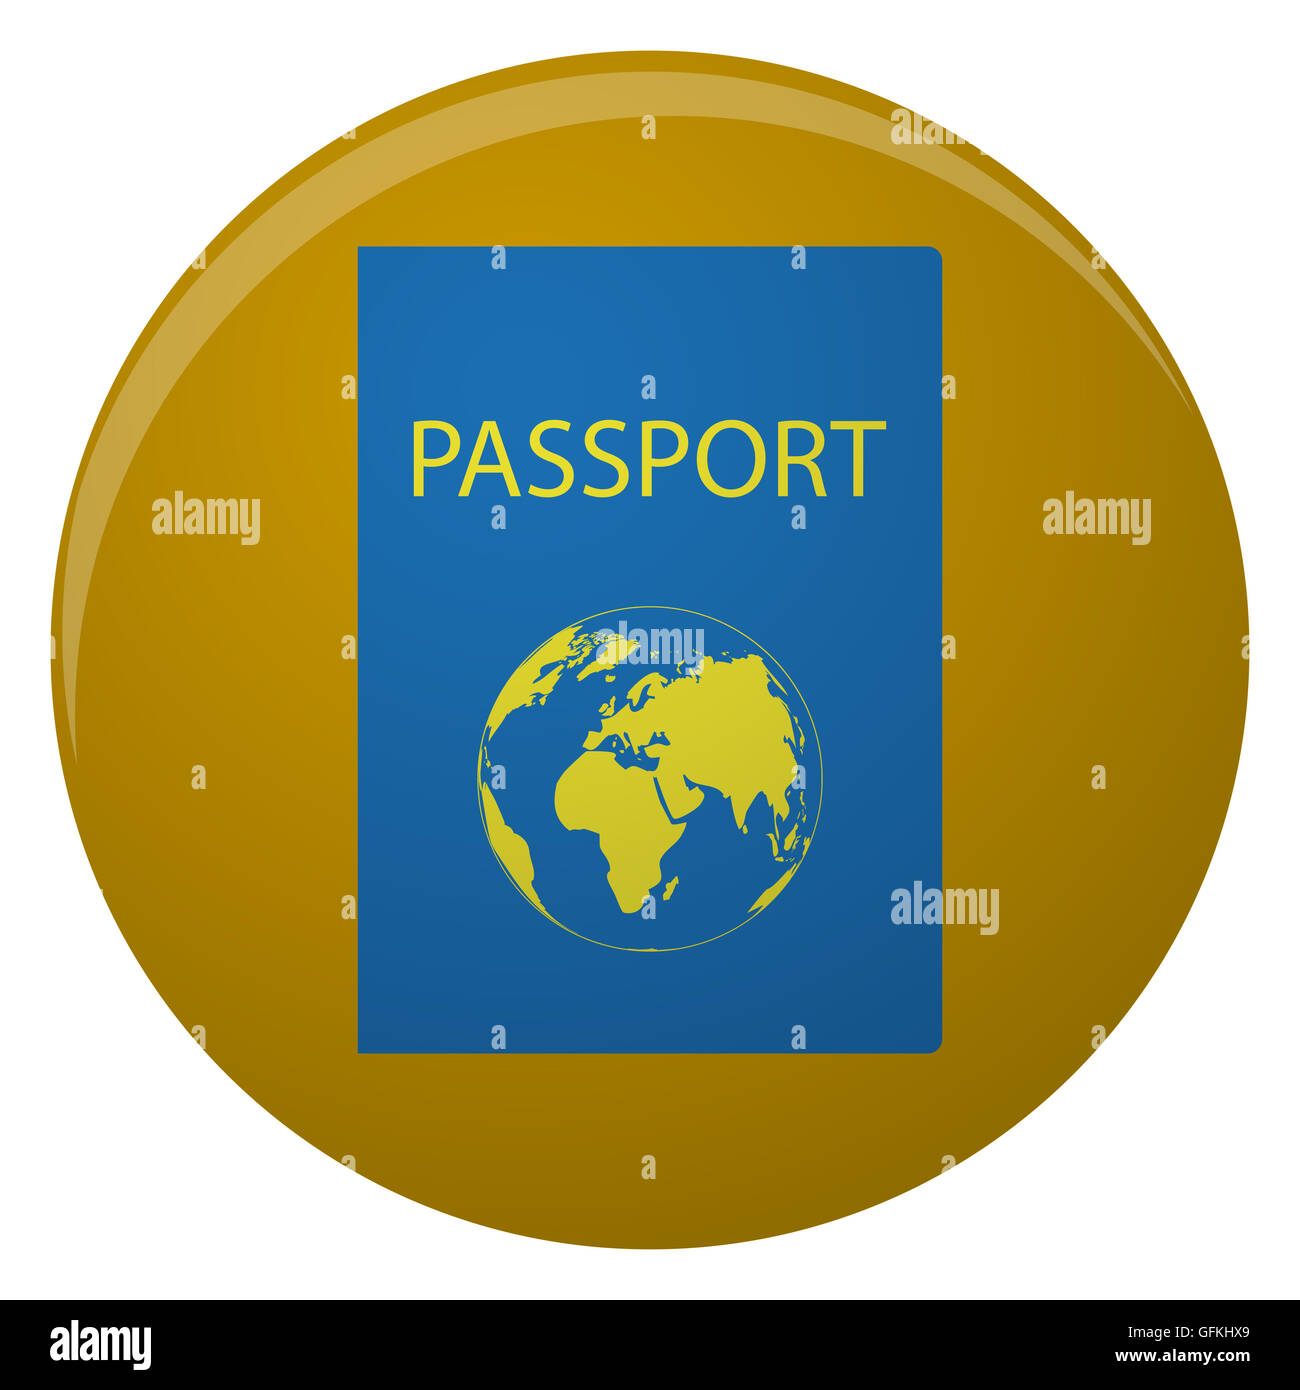 Reisepass-Symbol mit goldenen Weltkarte. Reisepass für Reise- und Identitätsdokumente Person, juristisches Dokument Identifikation, Vektor-illustration Stockfoto